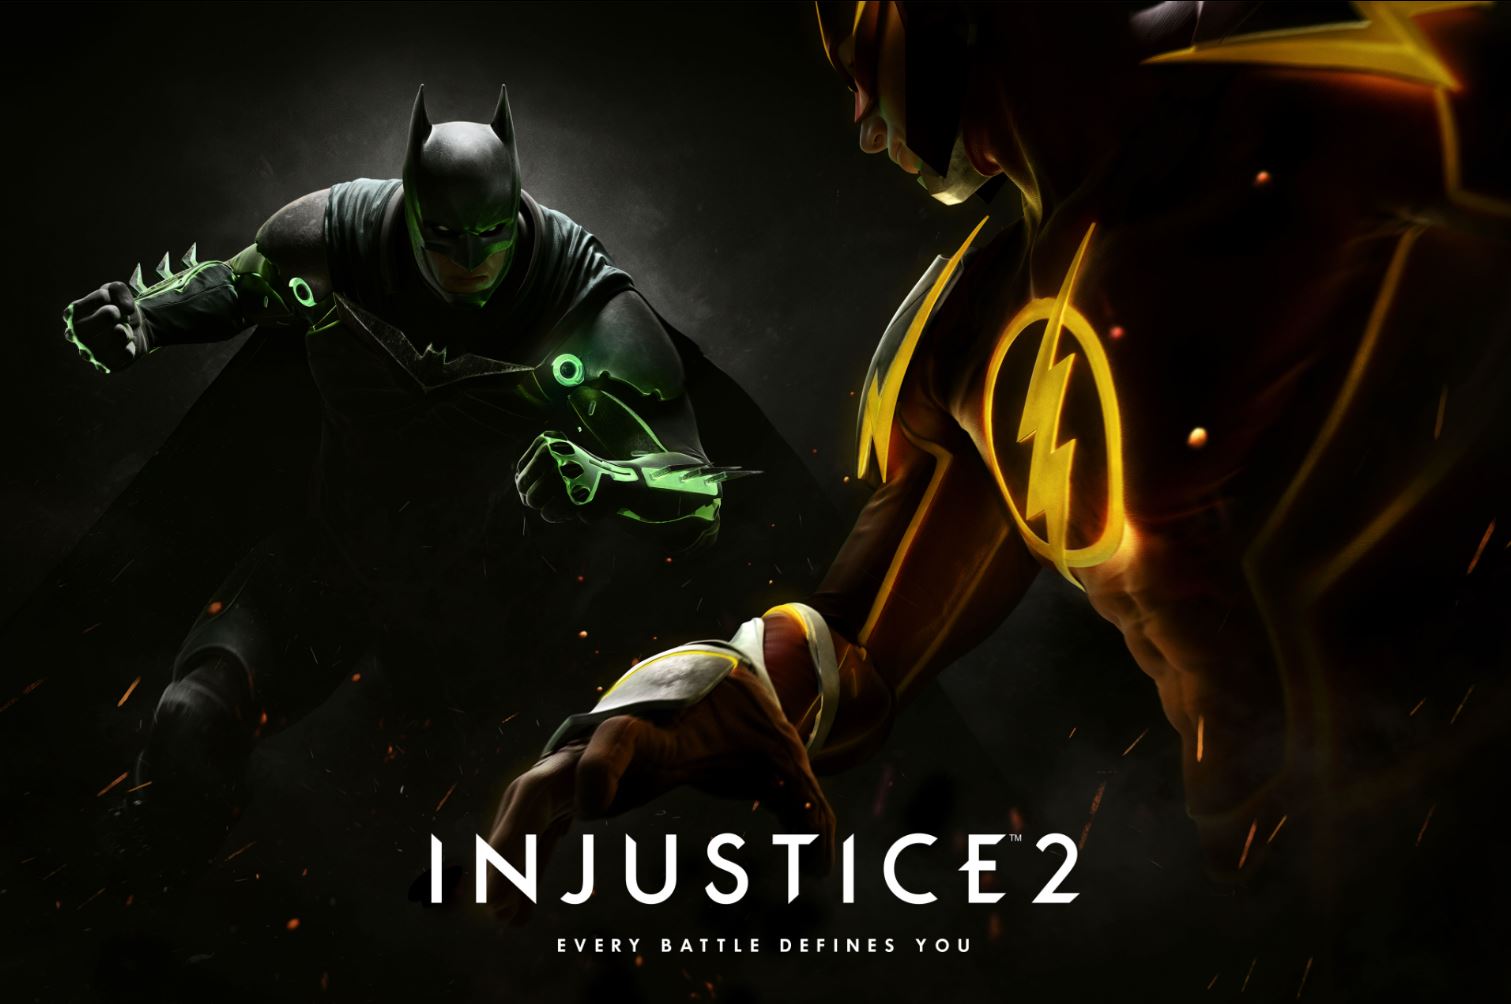 Descubre la lista completa de personajes de Injustice 2 confirmados.